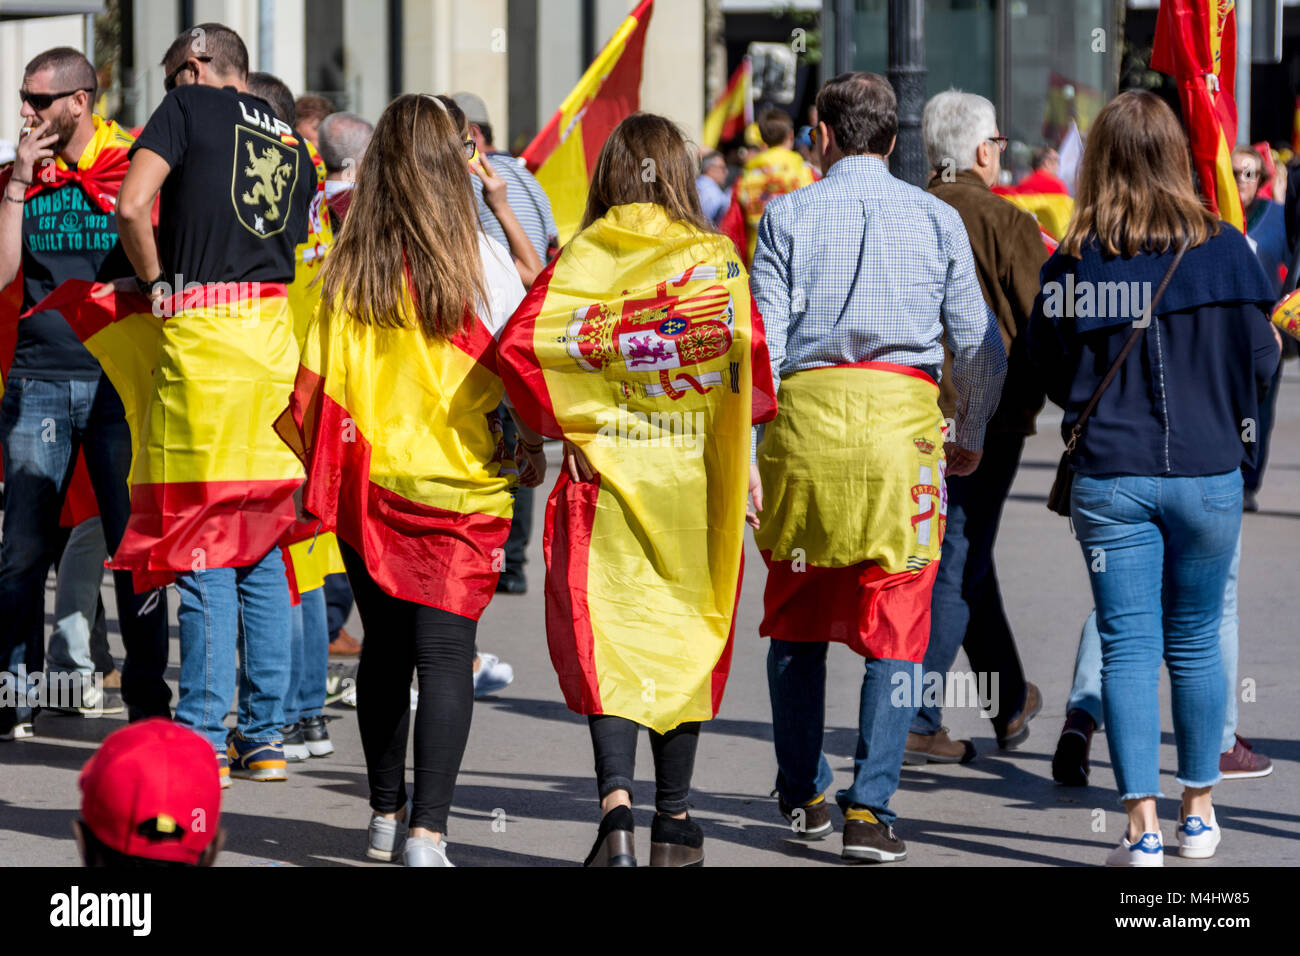 Dimostrazione für den Verbleib Kataloniens in Spanien, gemeinsame Aktion von Katalanen und Spanienanhängern Foto Stock